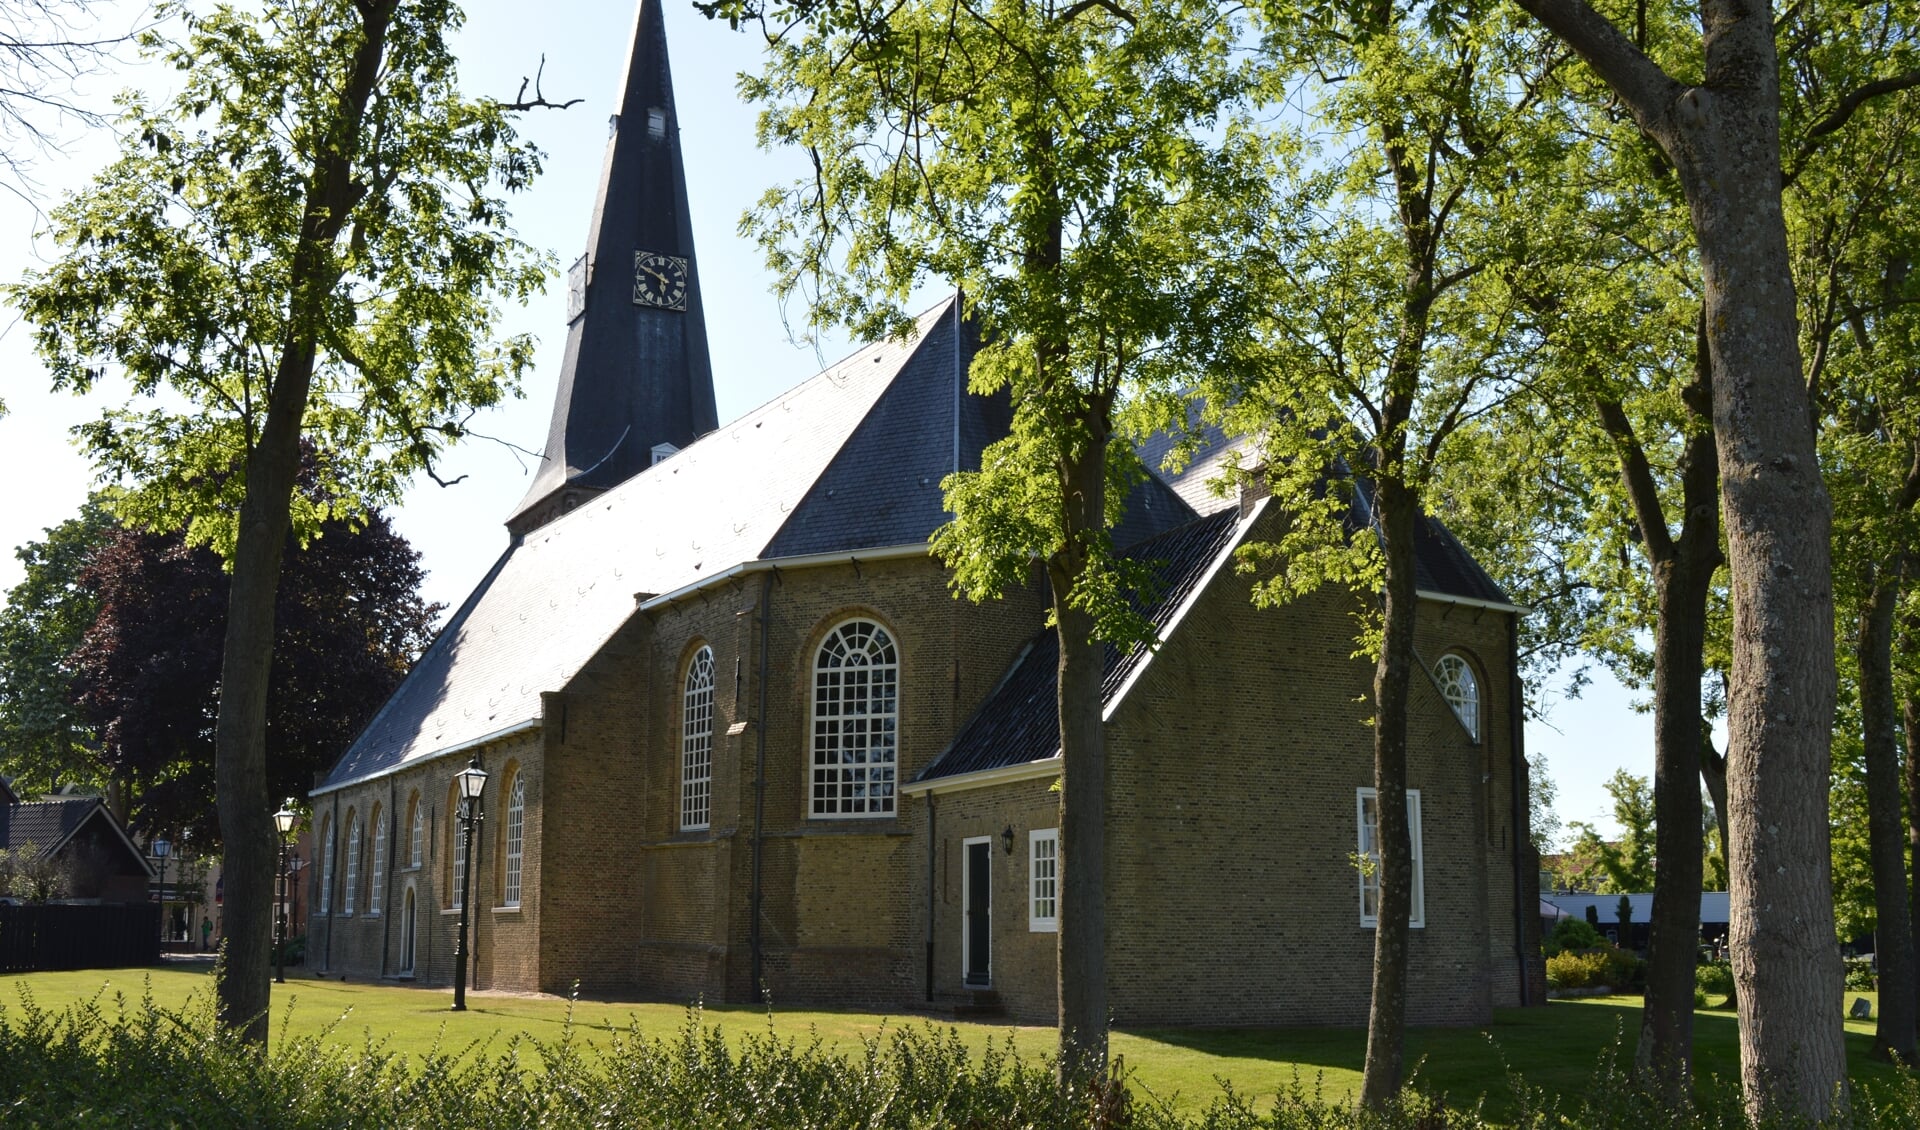 Het bestuur van de hervormde kerk in Zevenhuizen overlegt hoe de huidige diensten aangepast kunnen worden volgens de straks geldende richtlijnen.